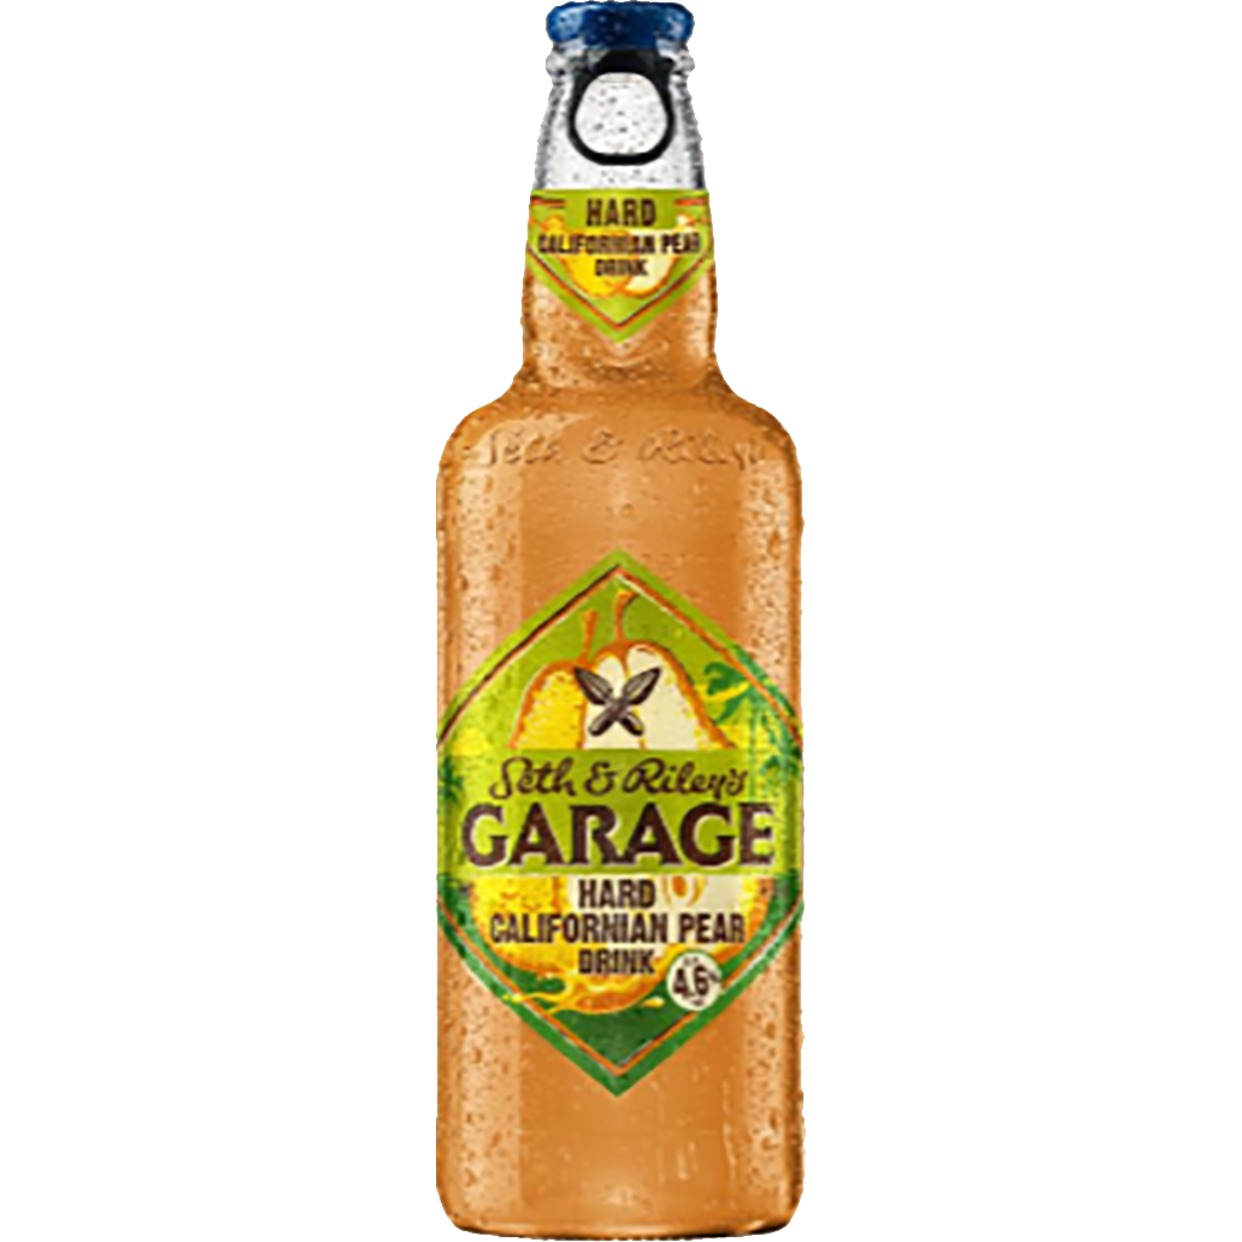 Напиток Seth and Riley’s Garage Hard Californian Pear изготовленный на основе пива пастеризованный, 4.6% 0.44л ст/б по акции в Пятерочке